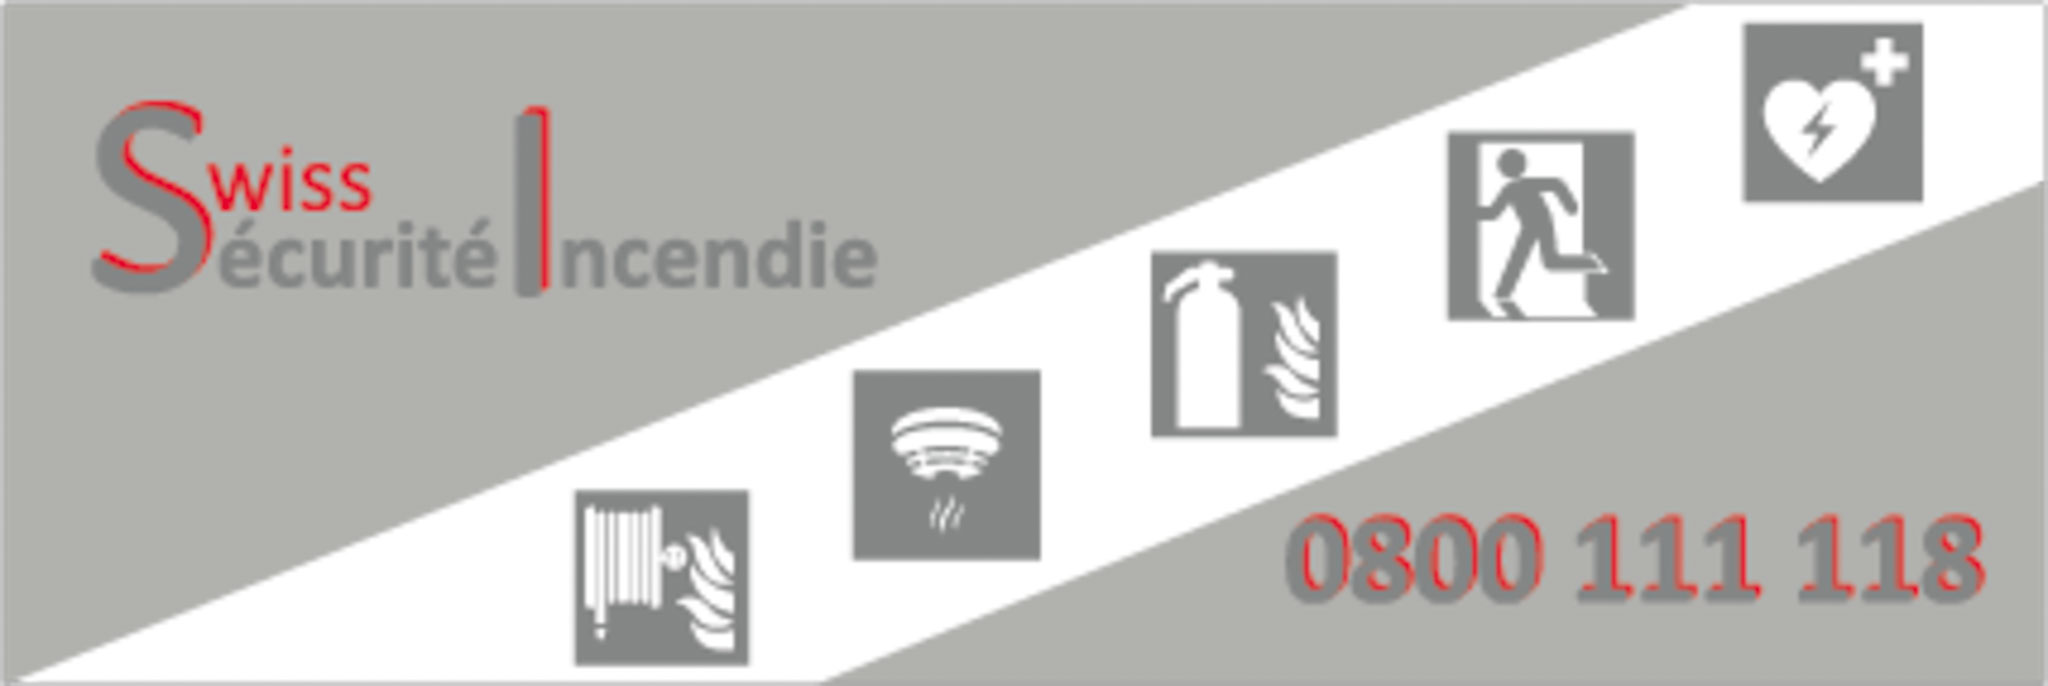 logo du sponsor Swiss sécurité incendie